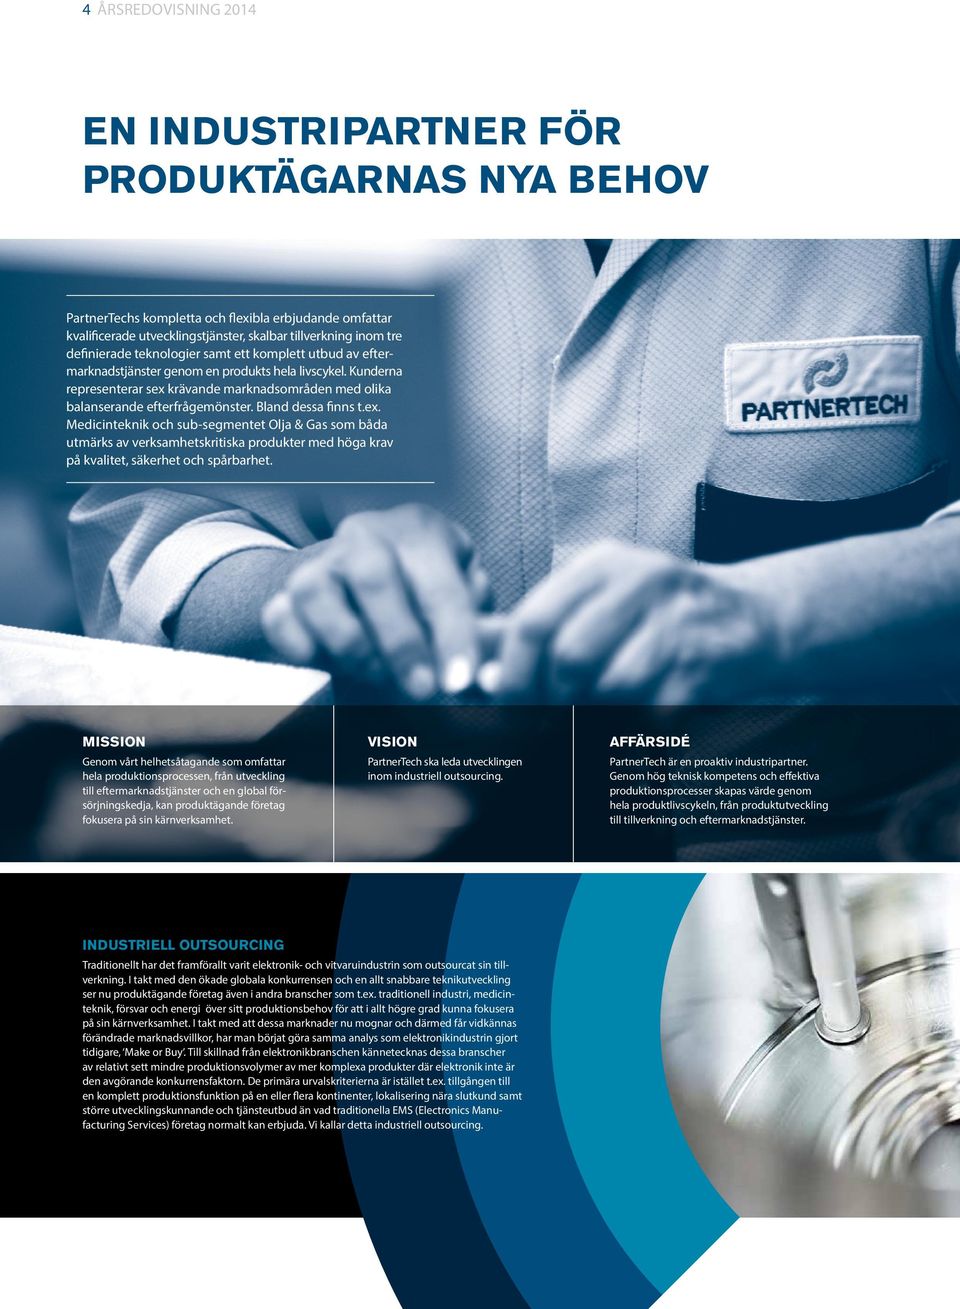 Bland dessa finns t.ex. Medicinteknik och sub-segmentet Olja & Gas som båda utmärks av verksamhetskritiska produkter med höga krav på kvalitet, säkerhet och spårbarhet.